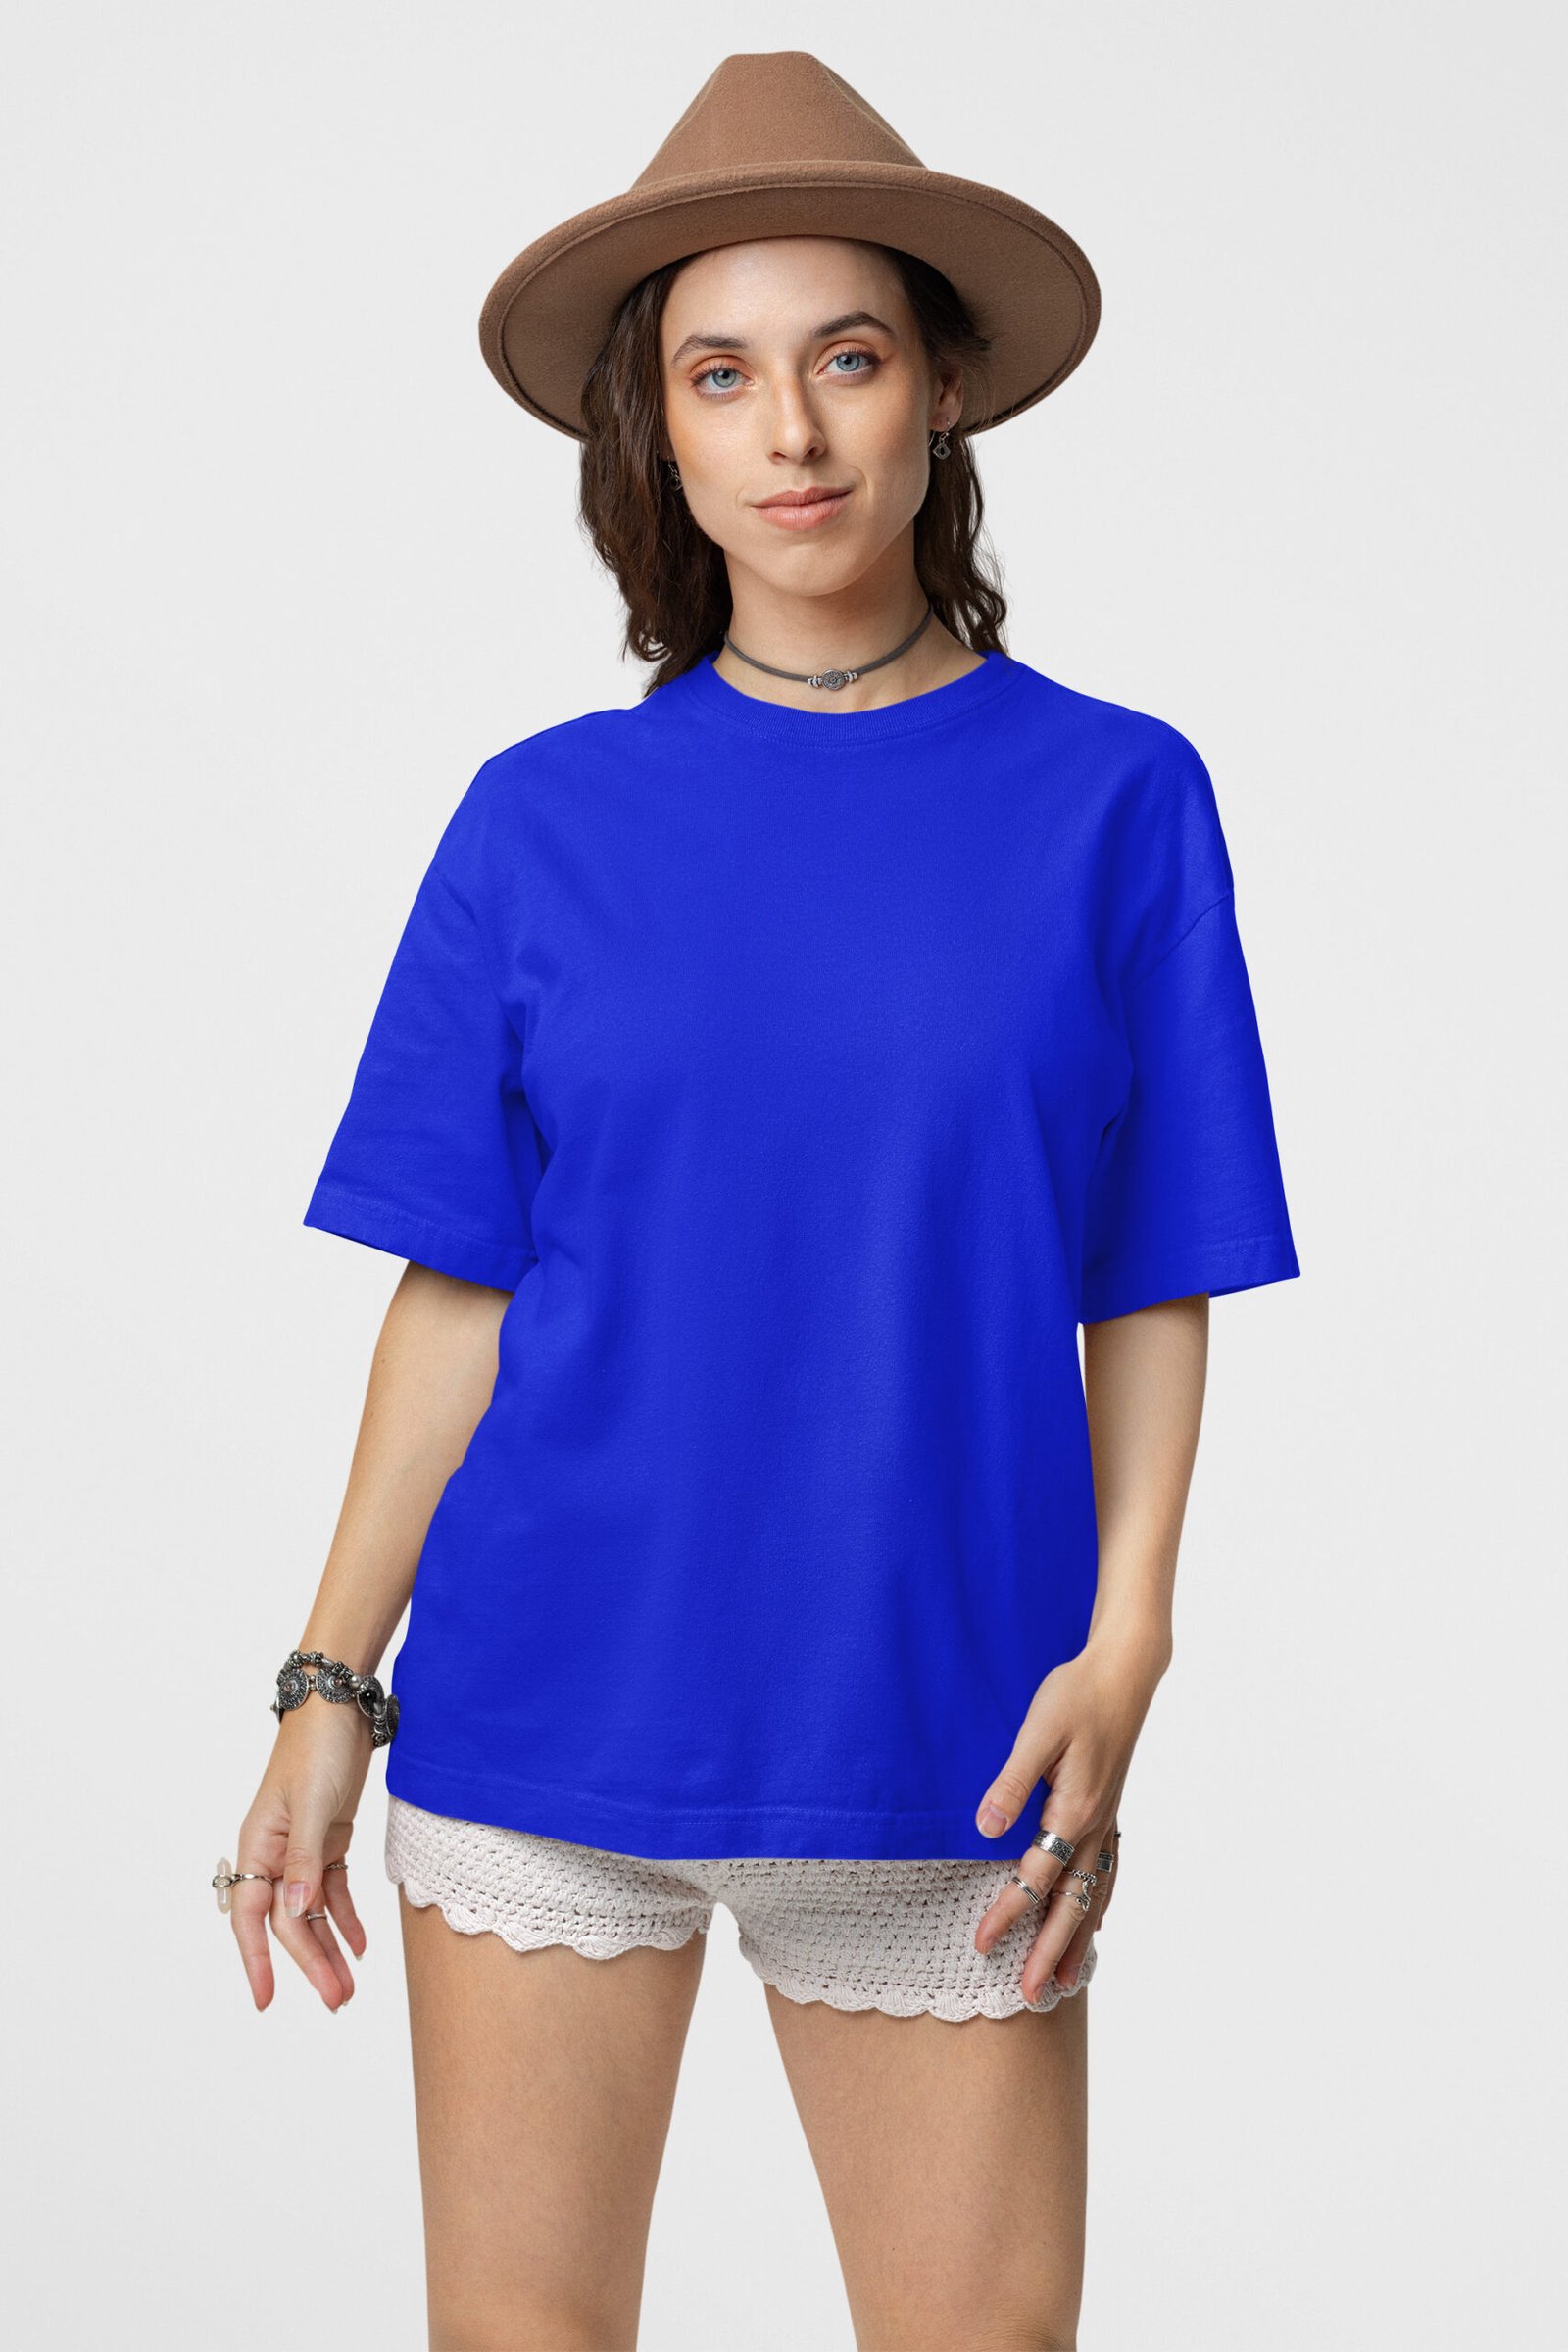 Wayward Wayz Solid T-Shirt Royal Blue-model front